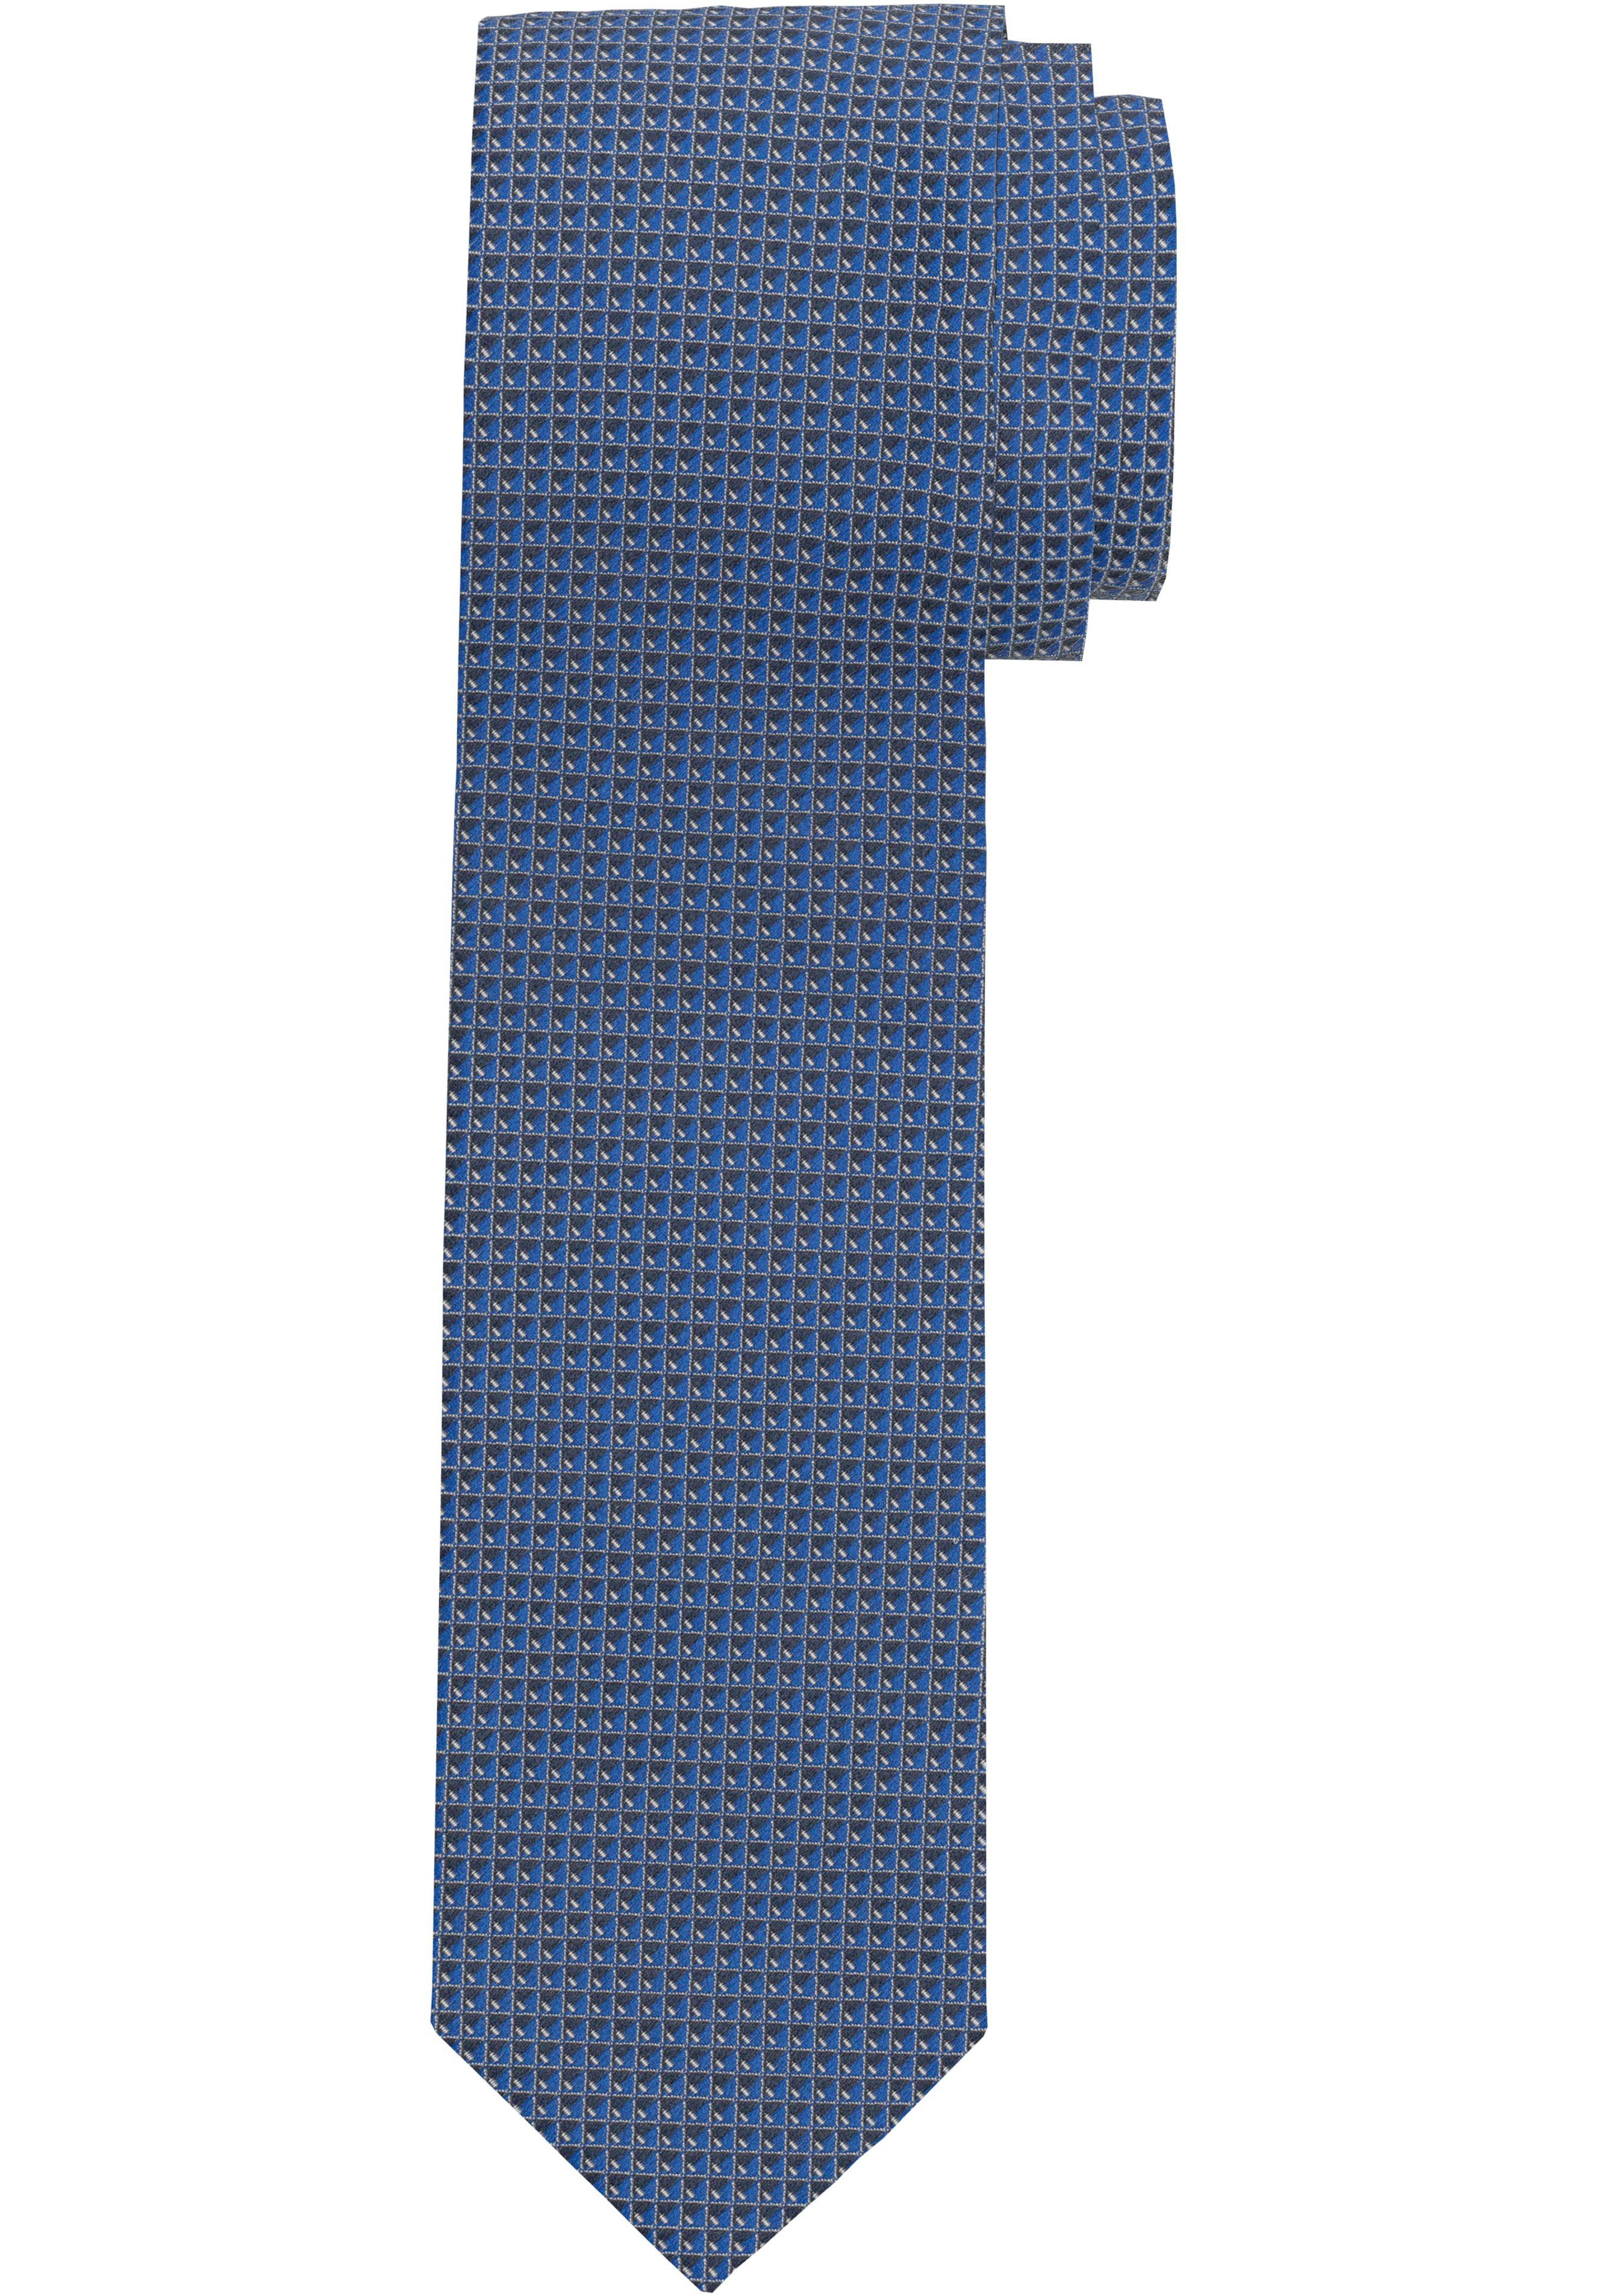 OLYMP Krawatte marine Krawatte Strukturierte